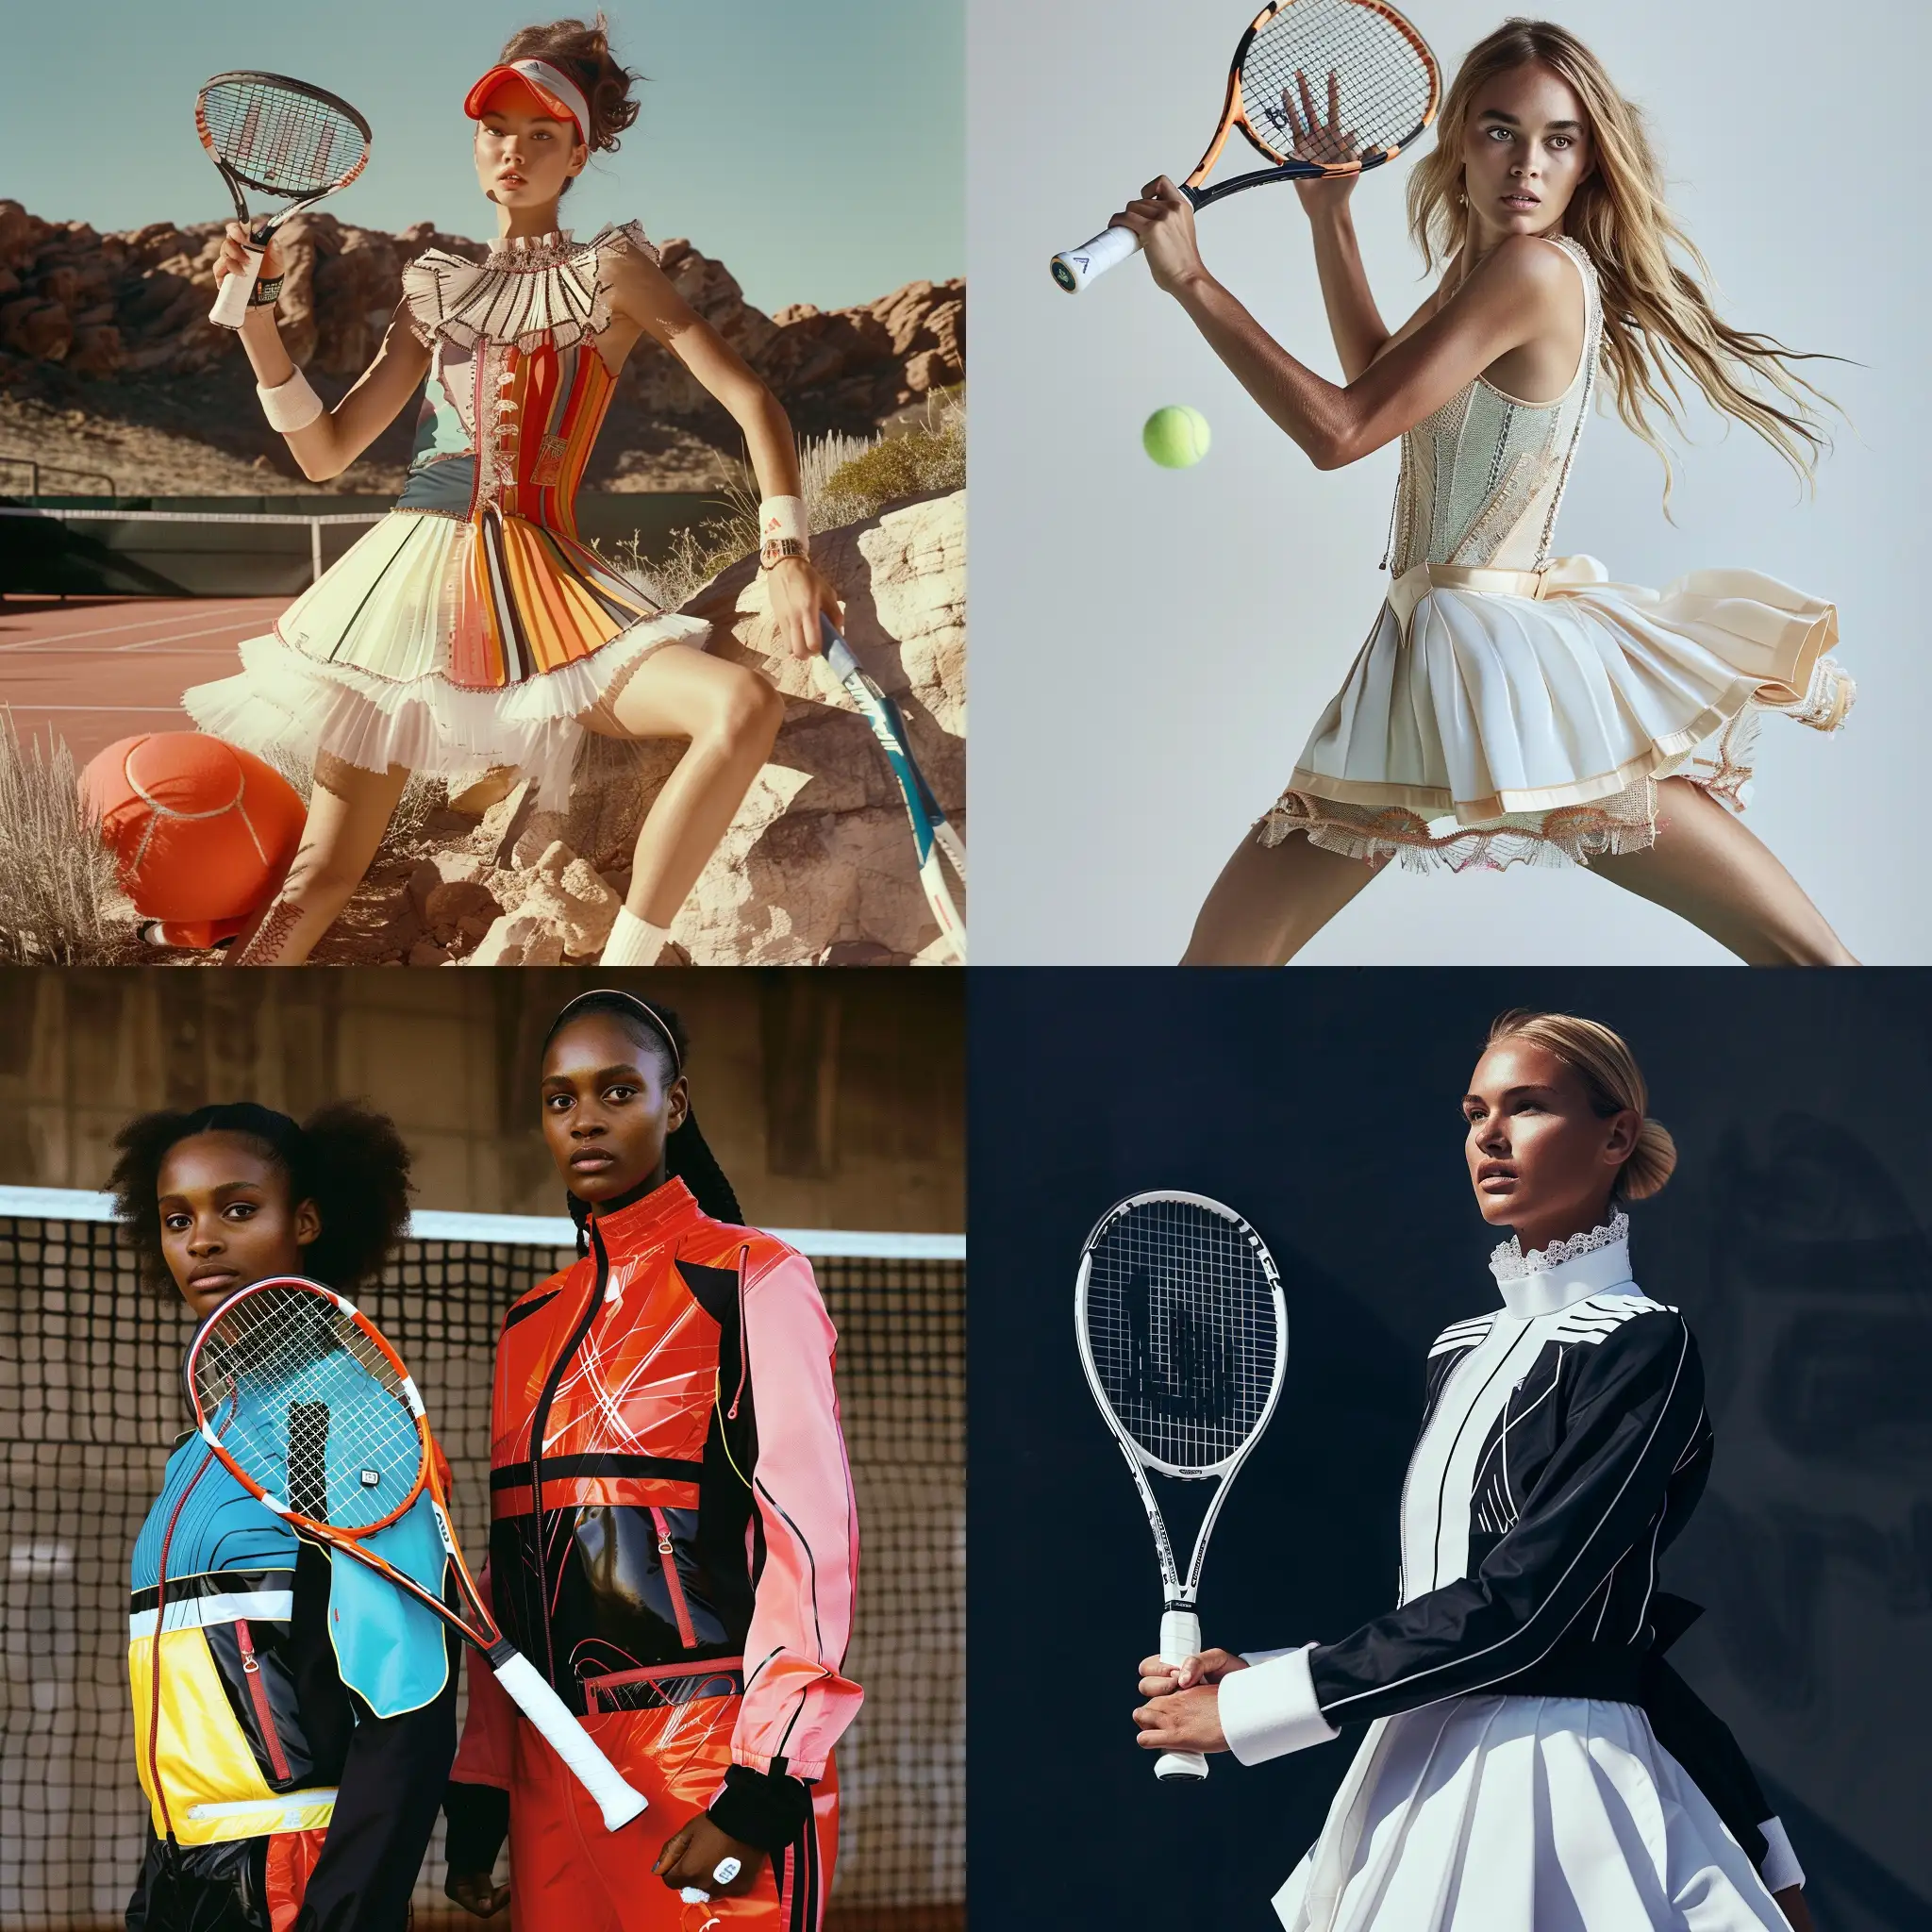 High-Fashion-Tennis-Mode-Elegant-Athlete-in-Glamorous-Tennis-Attire